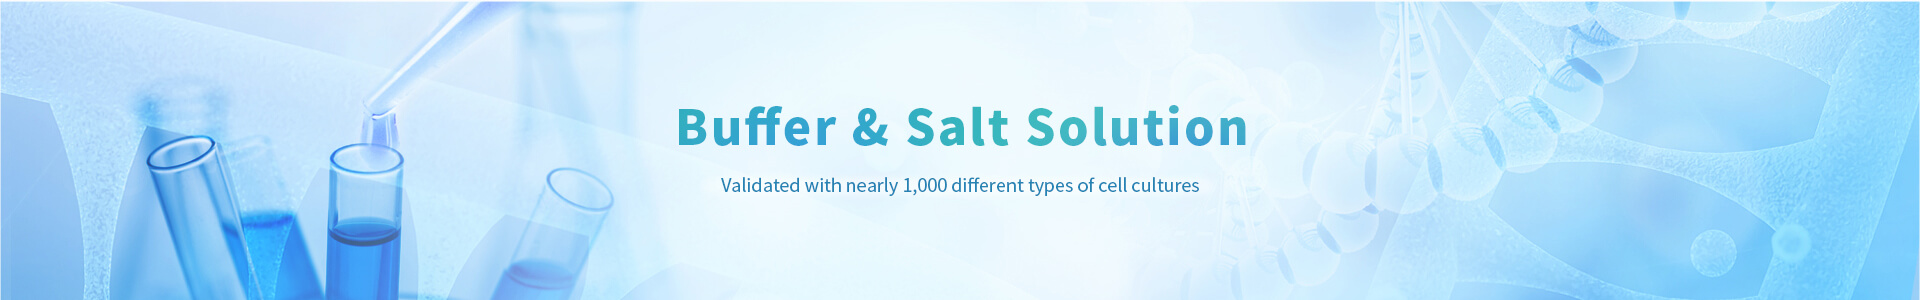 Buffer & Salt Solution